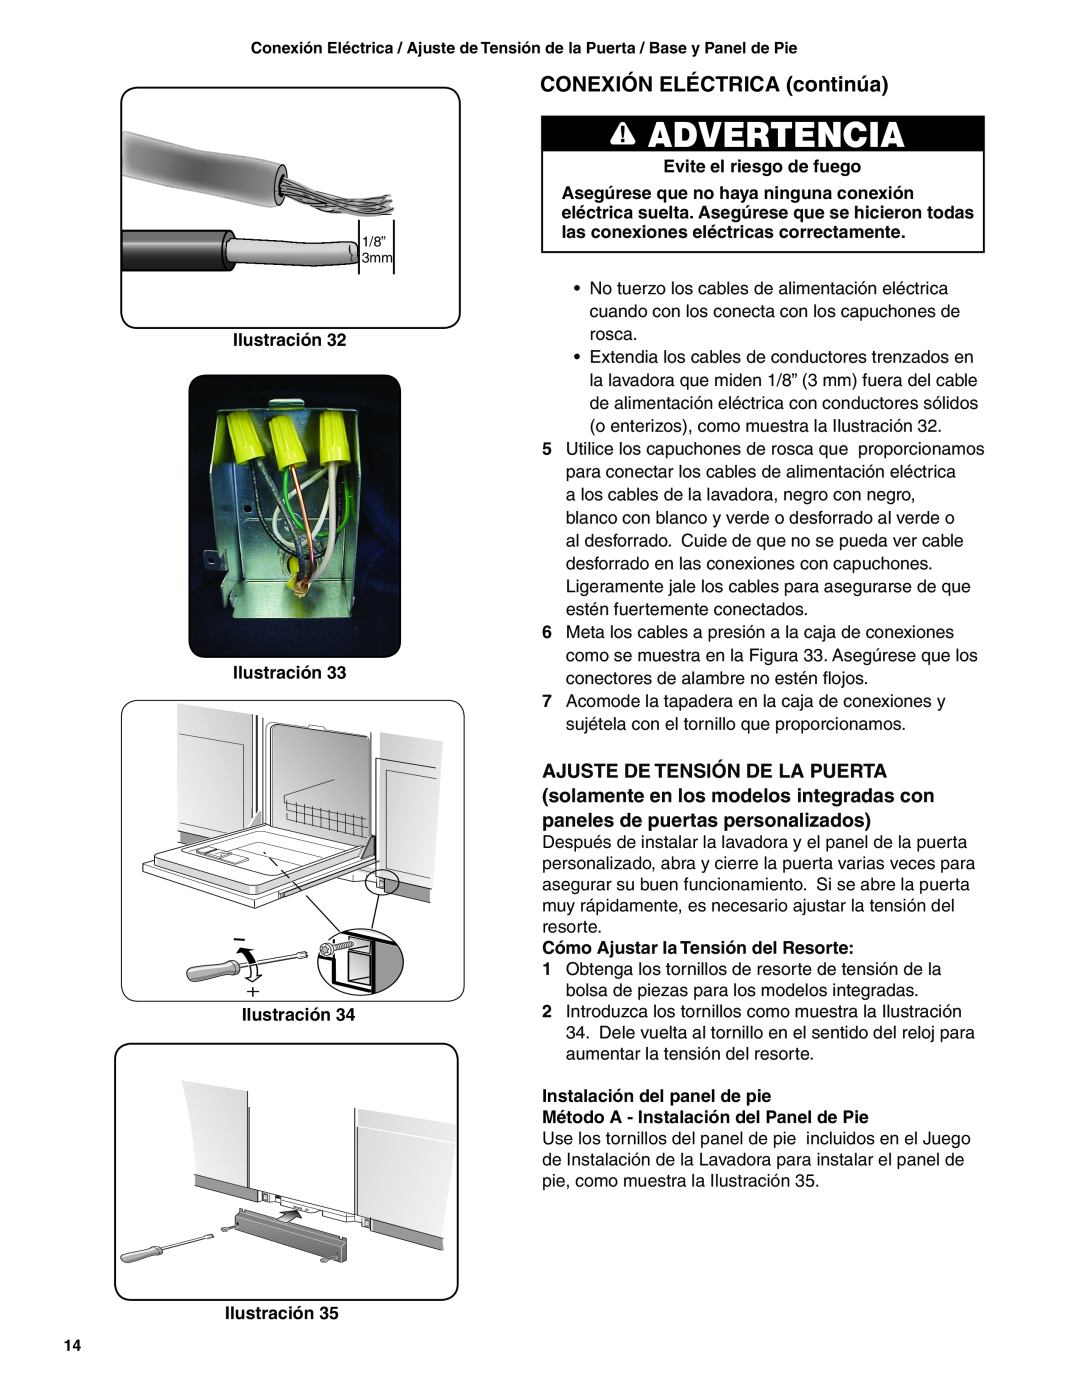 Bosch Appliances BSH Dishwasher CONEXIÓN ELÉCTRICA continúa, Advertencia, Evite el riesgo de fuego, Ilustración 